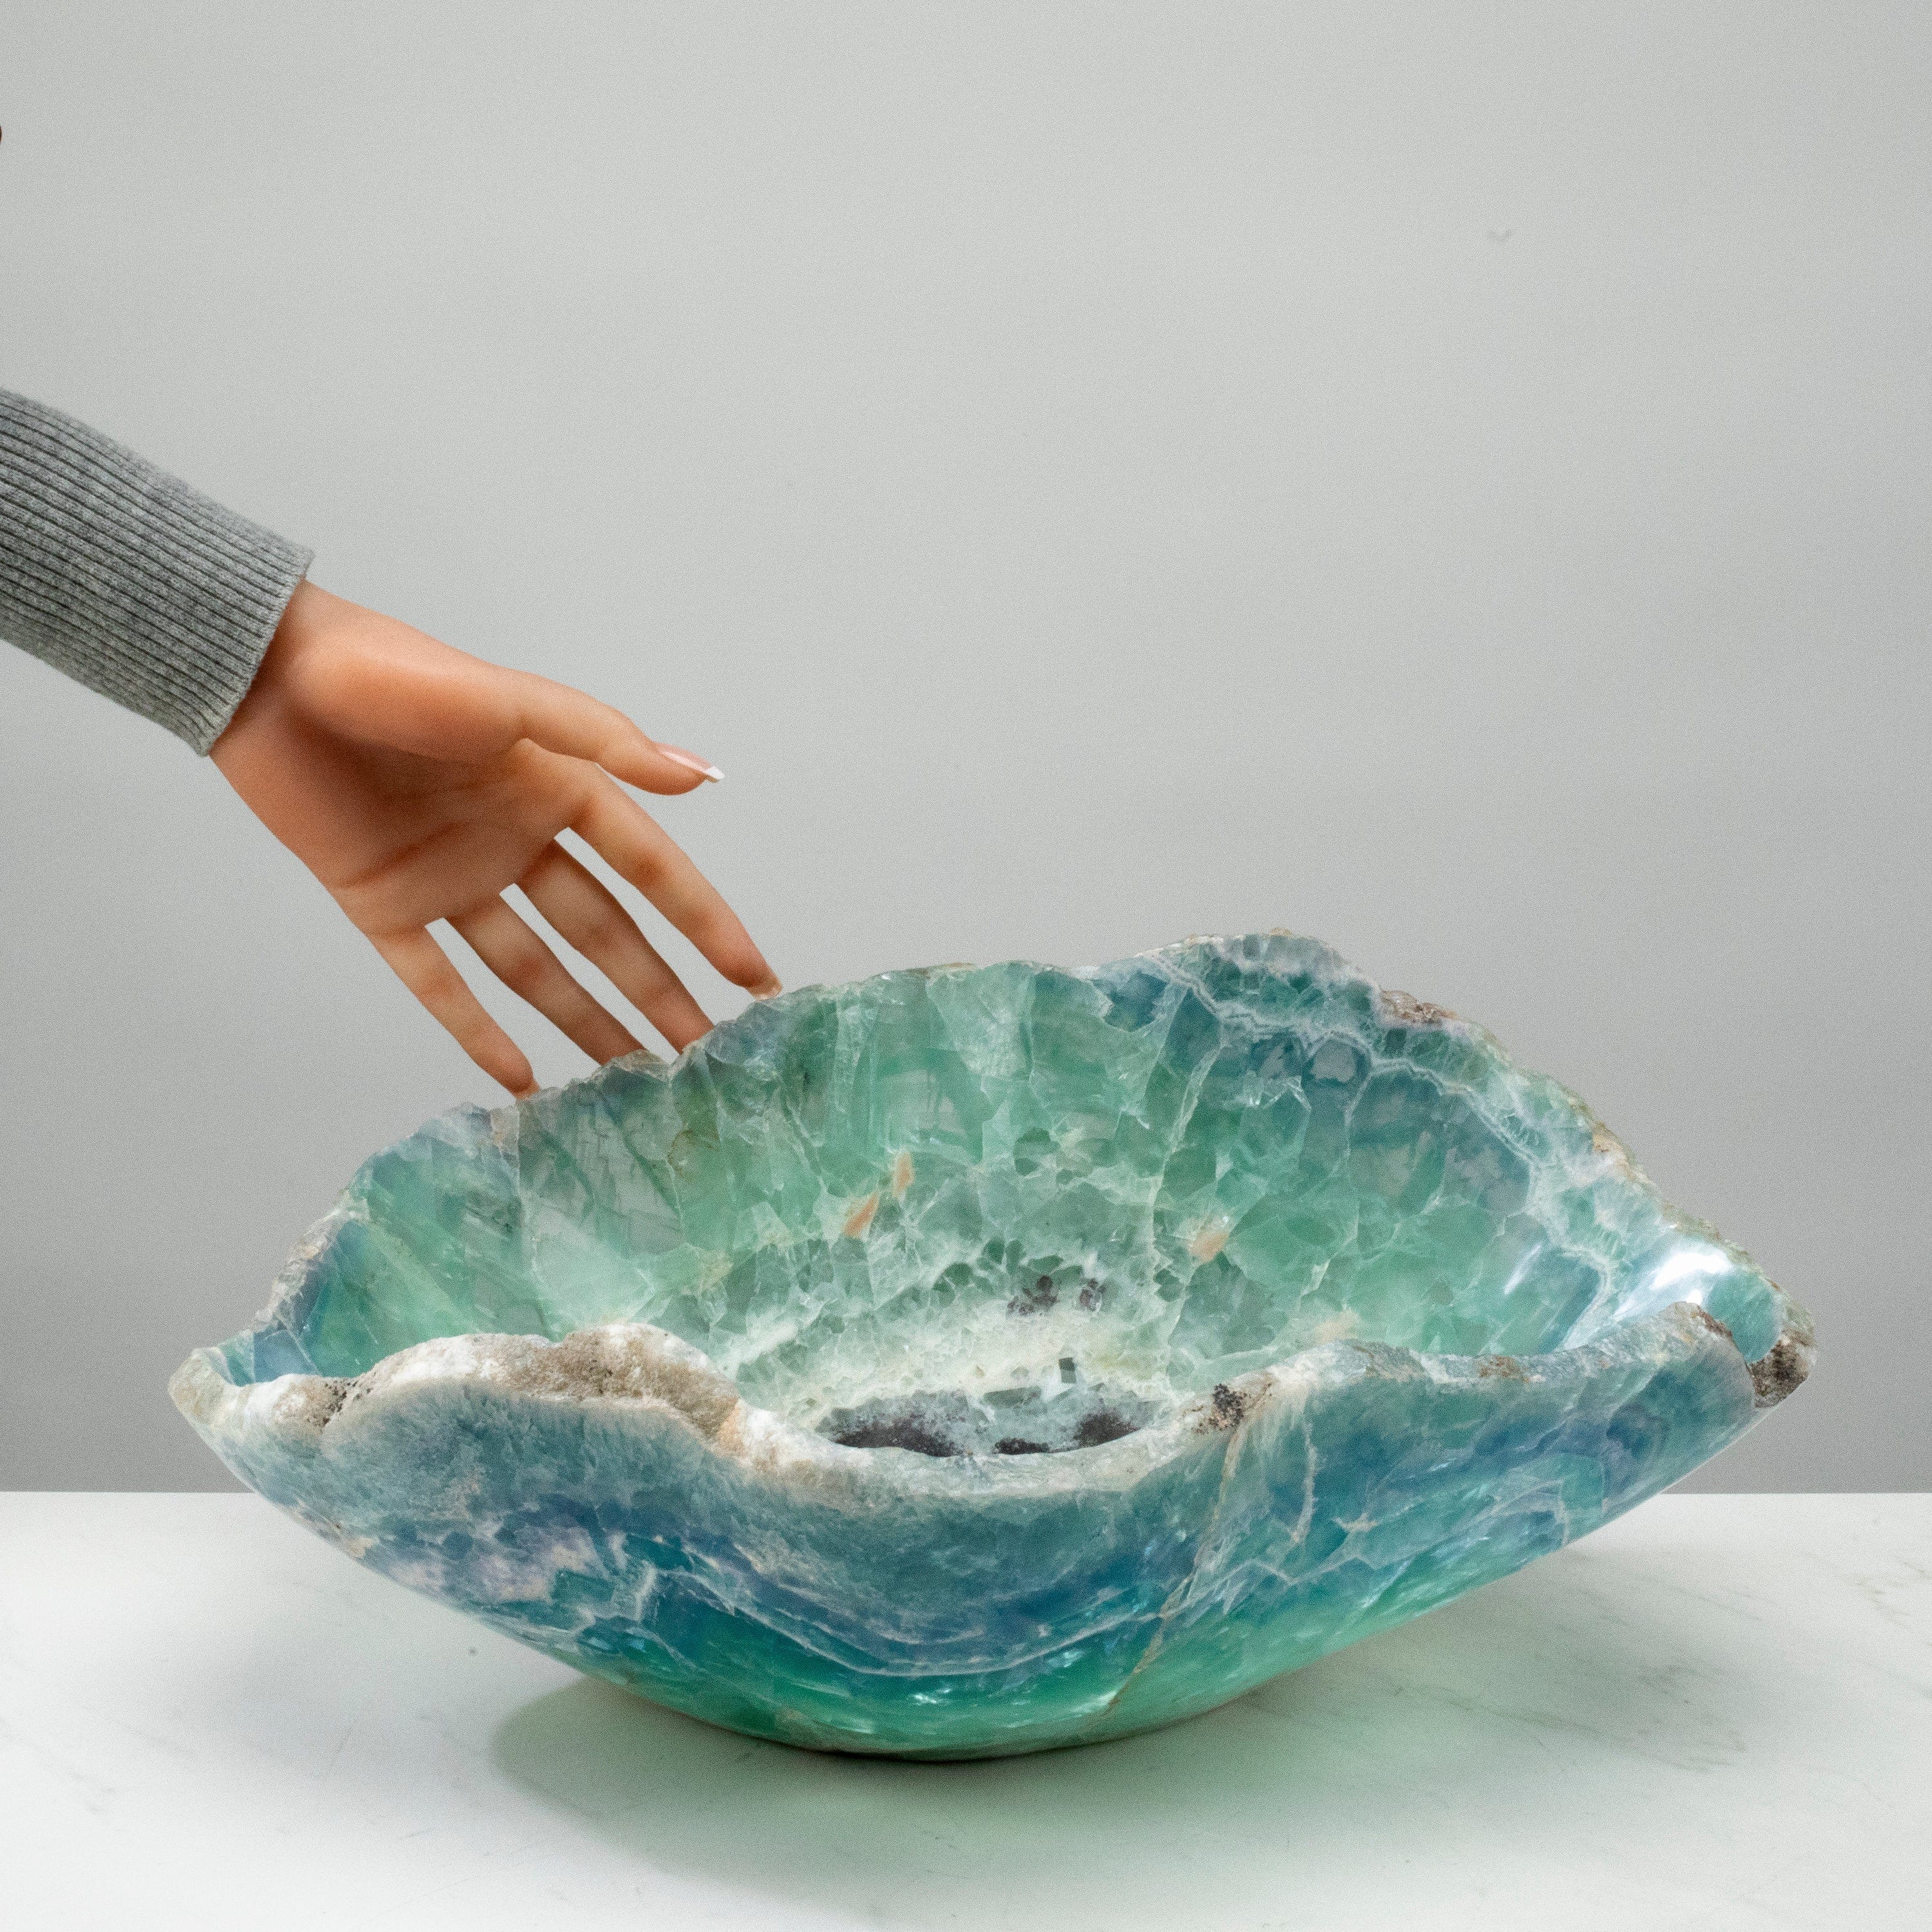 KALIFANO Gemstone Bowls Natural Blue / Green Fluorite Bowl 16" BFL7400.001